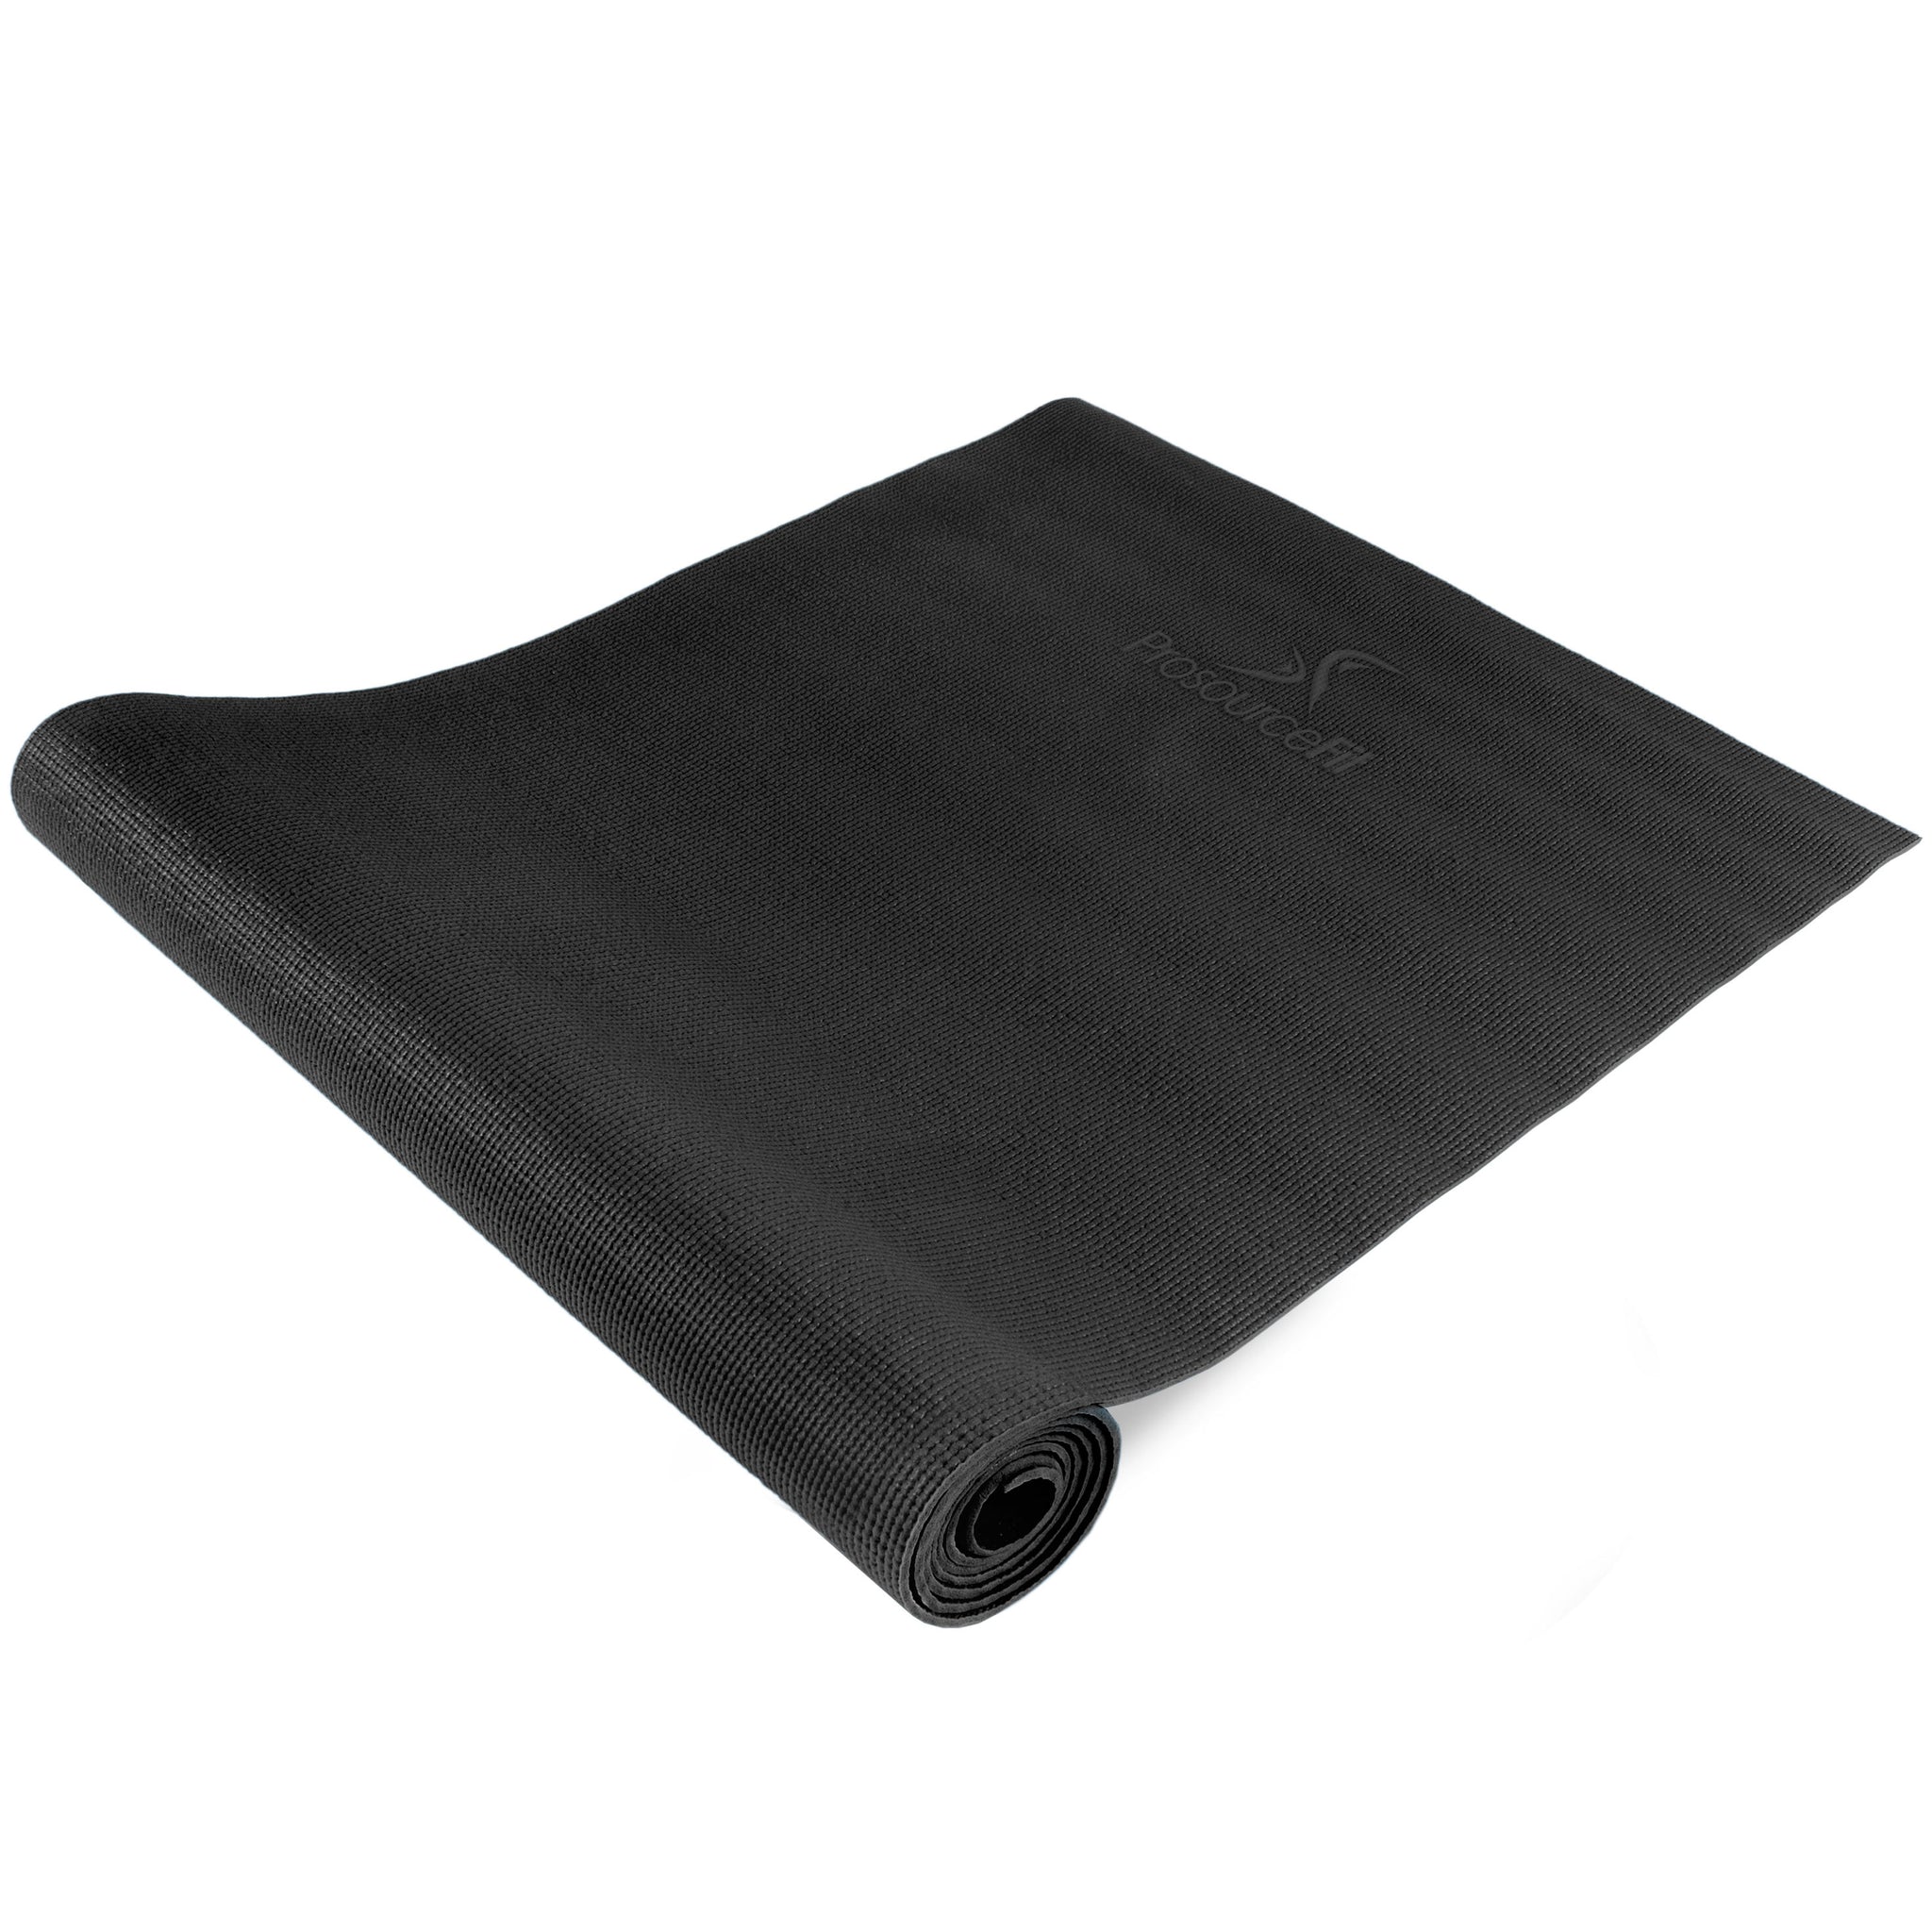 Black Classic Yoga Mat 1/8”